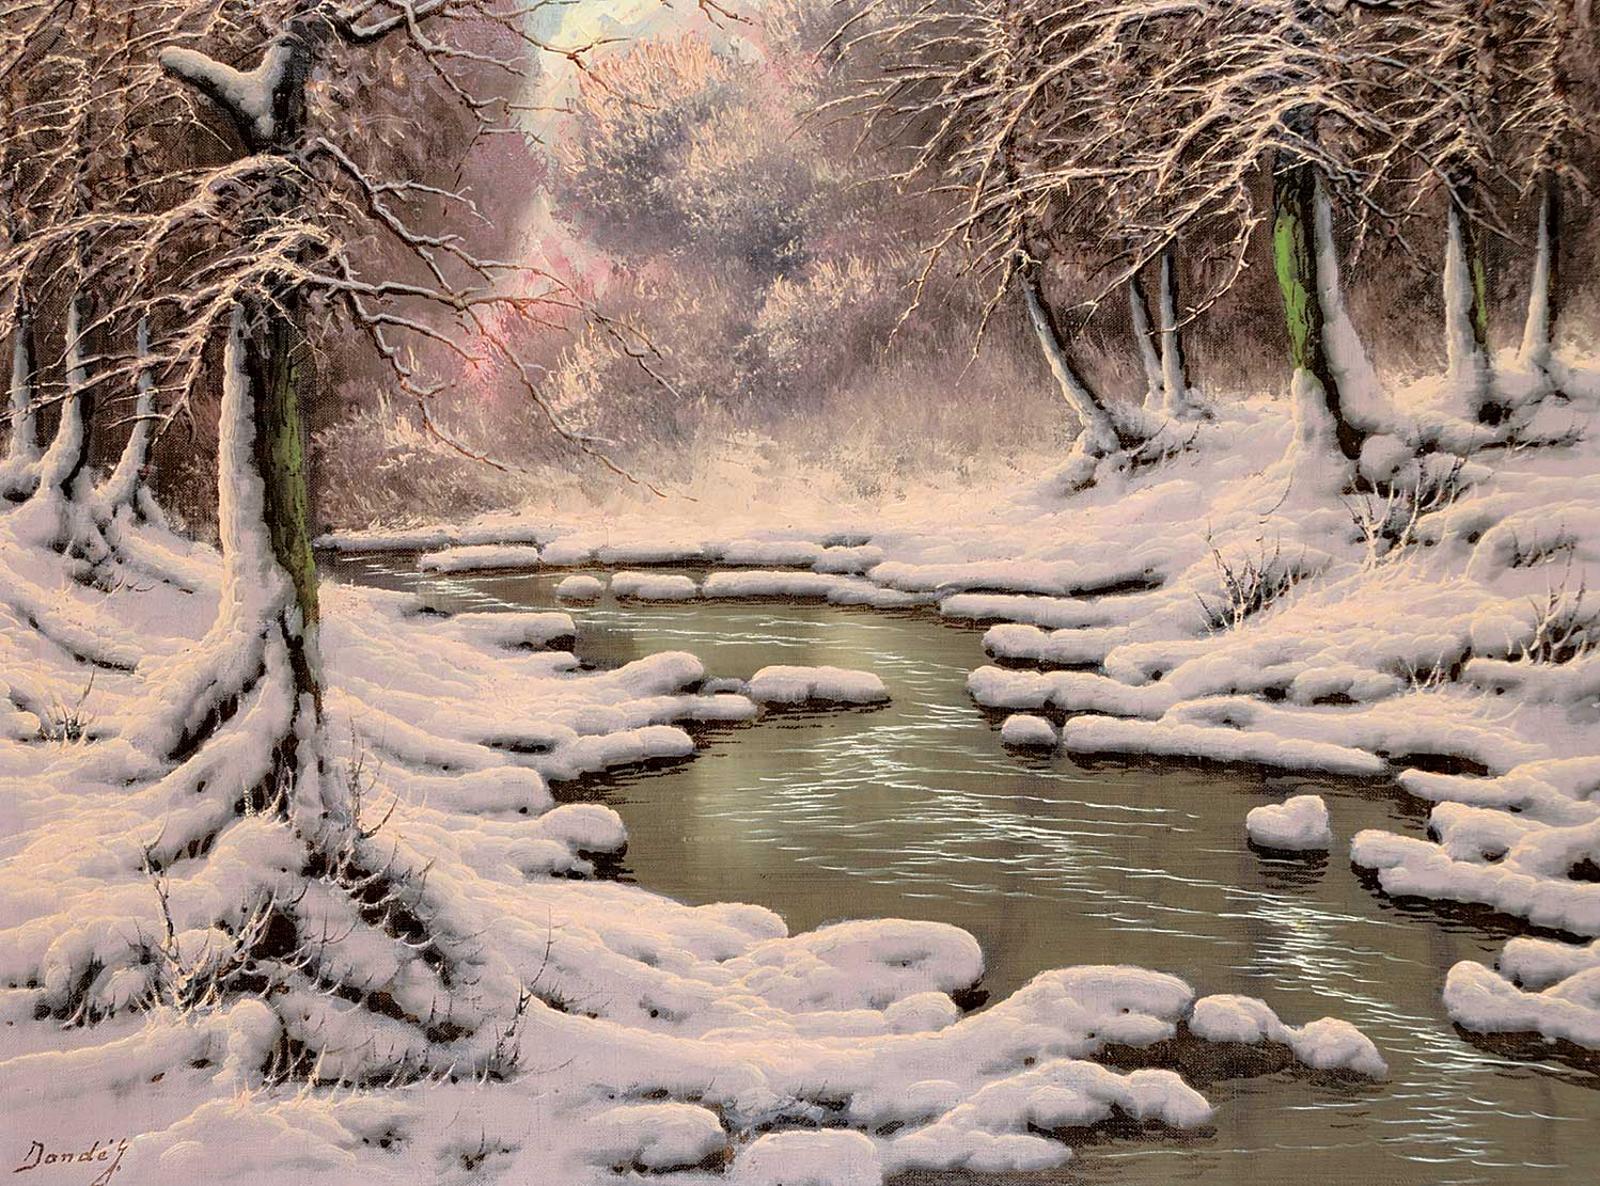 Joseph Dande (1911) - Untitled - Winter River